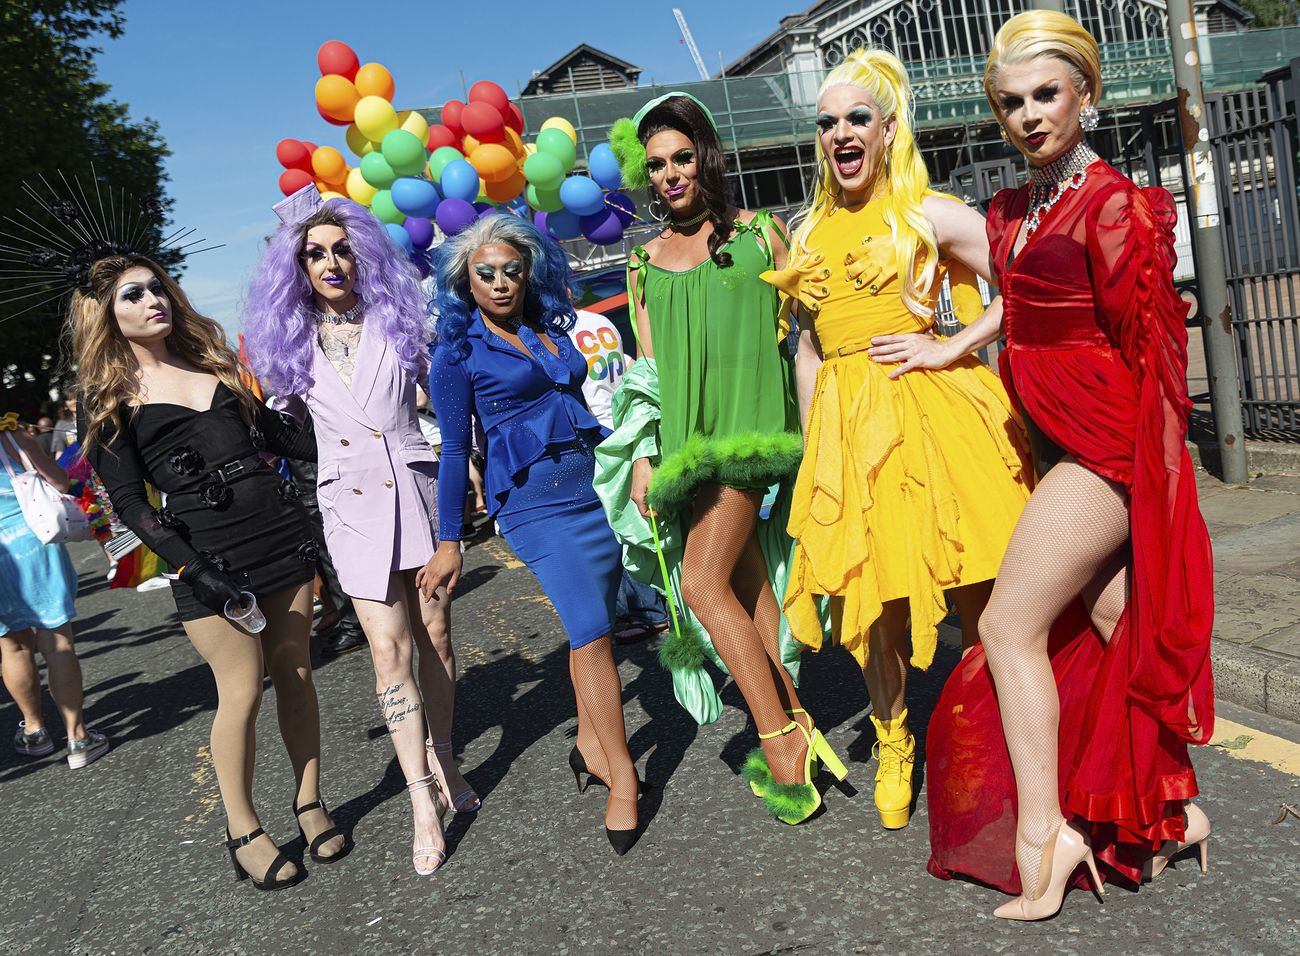 Drag queens at pride parade